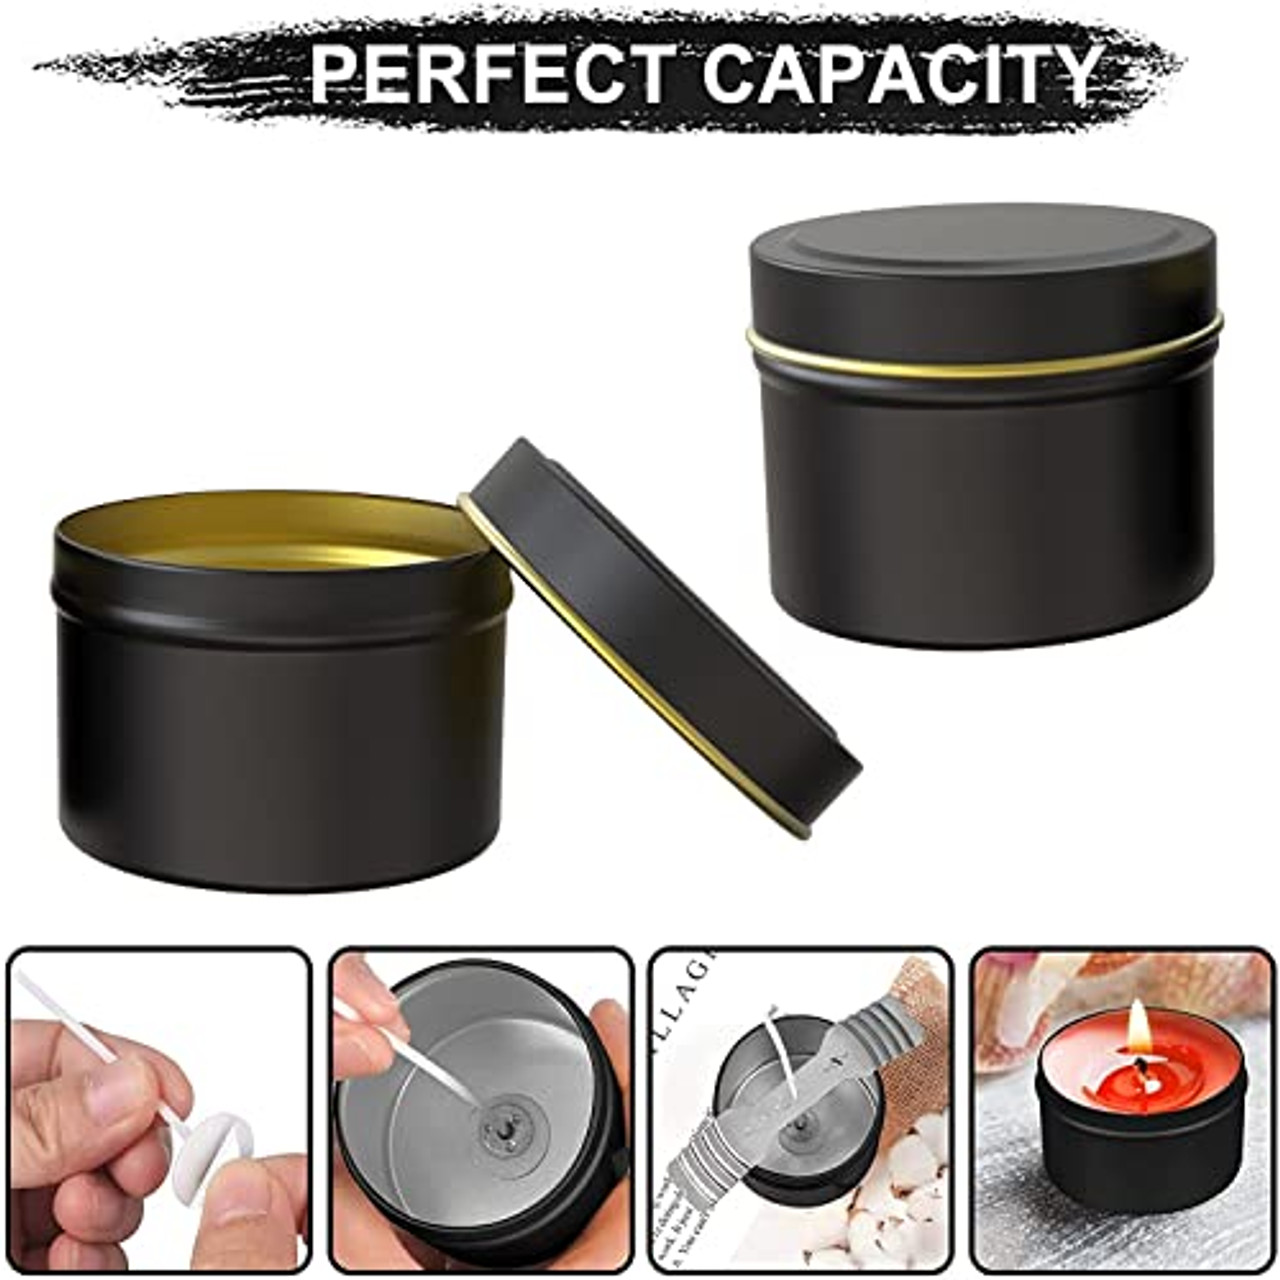 27 Pieces Candle Tins 2.5 oz/4 oz/8 oz Candle Jars Black Metal Tin Cans